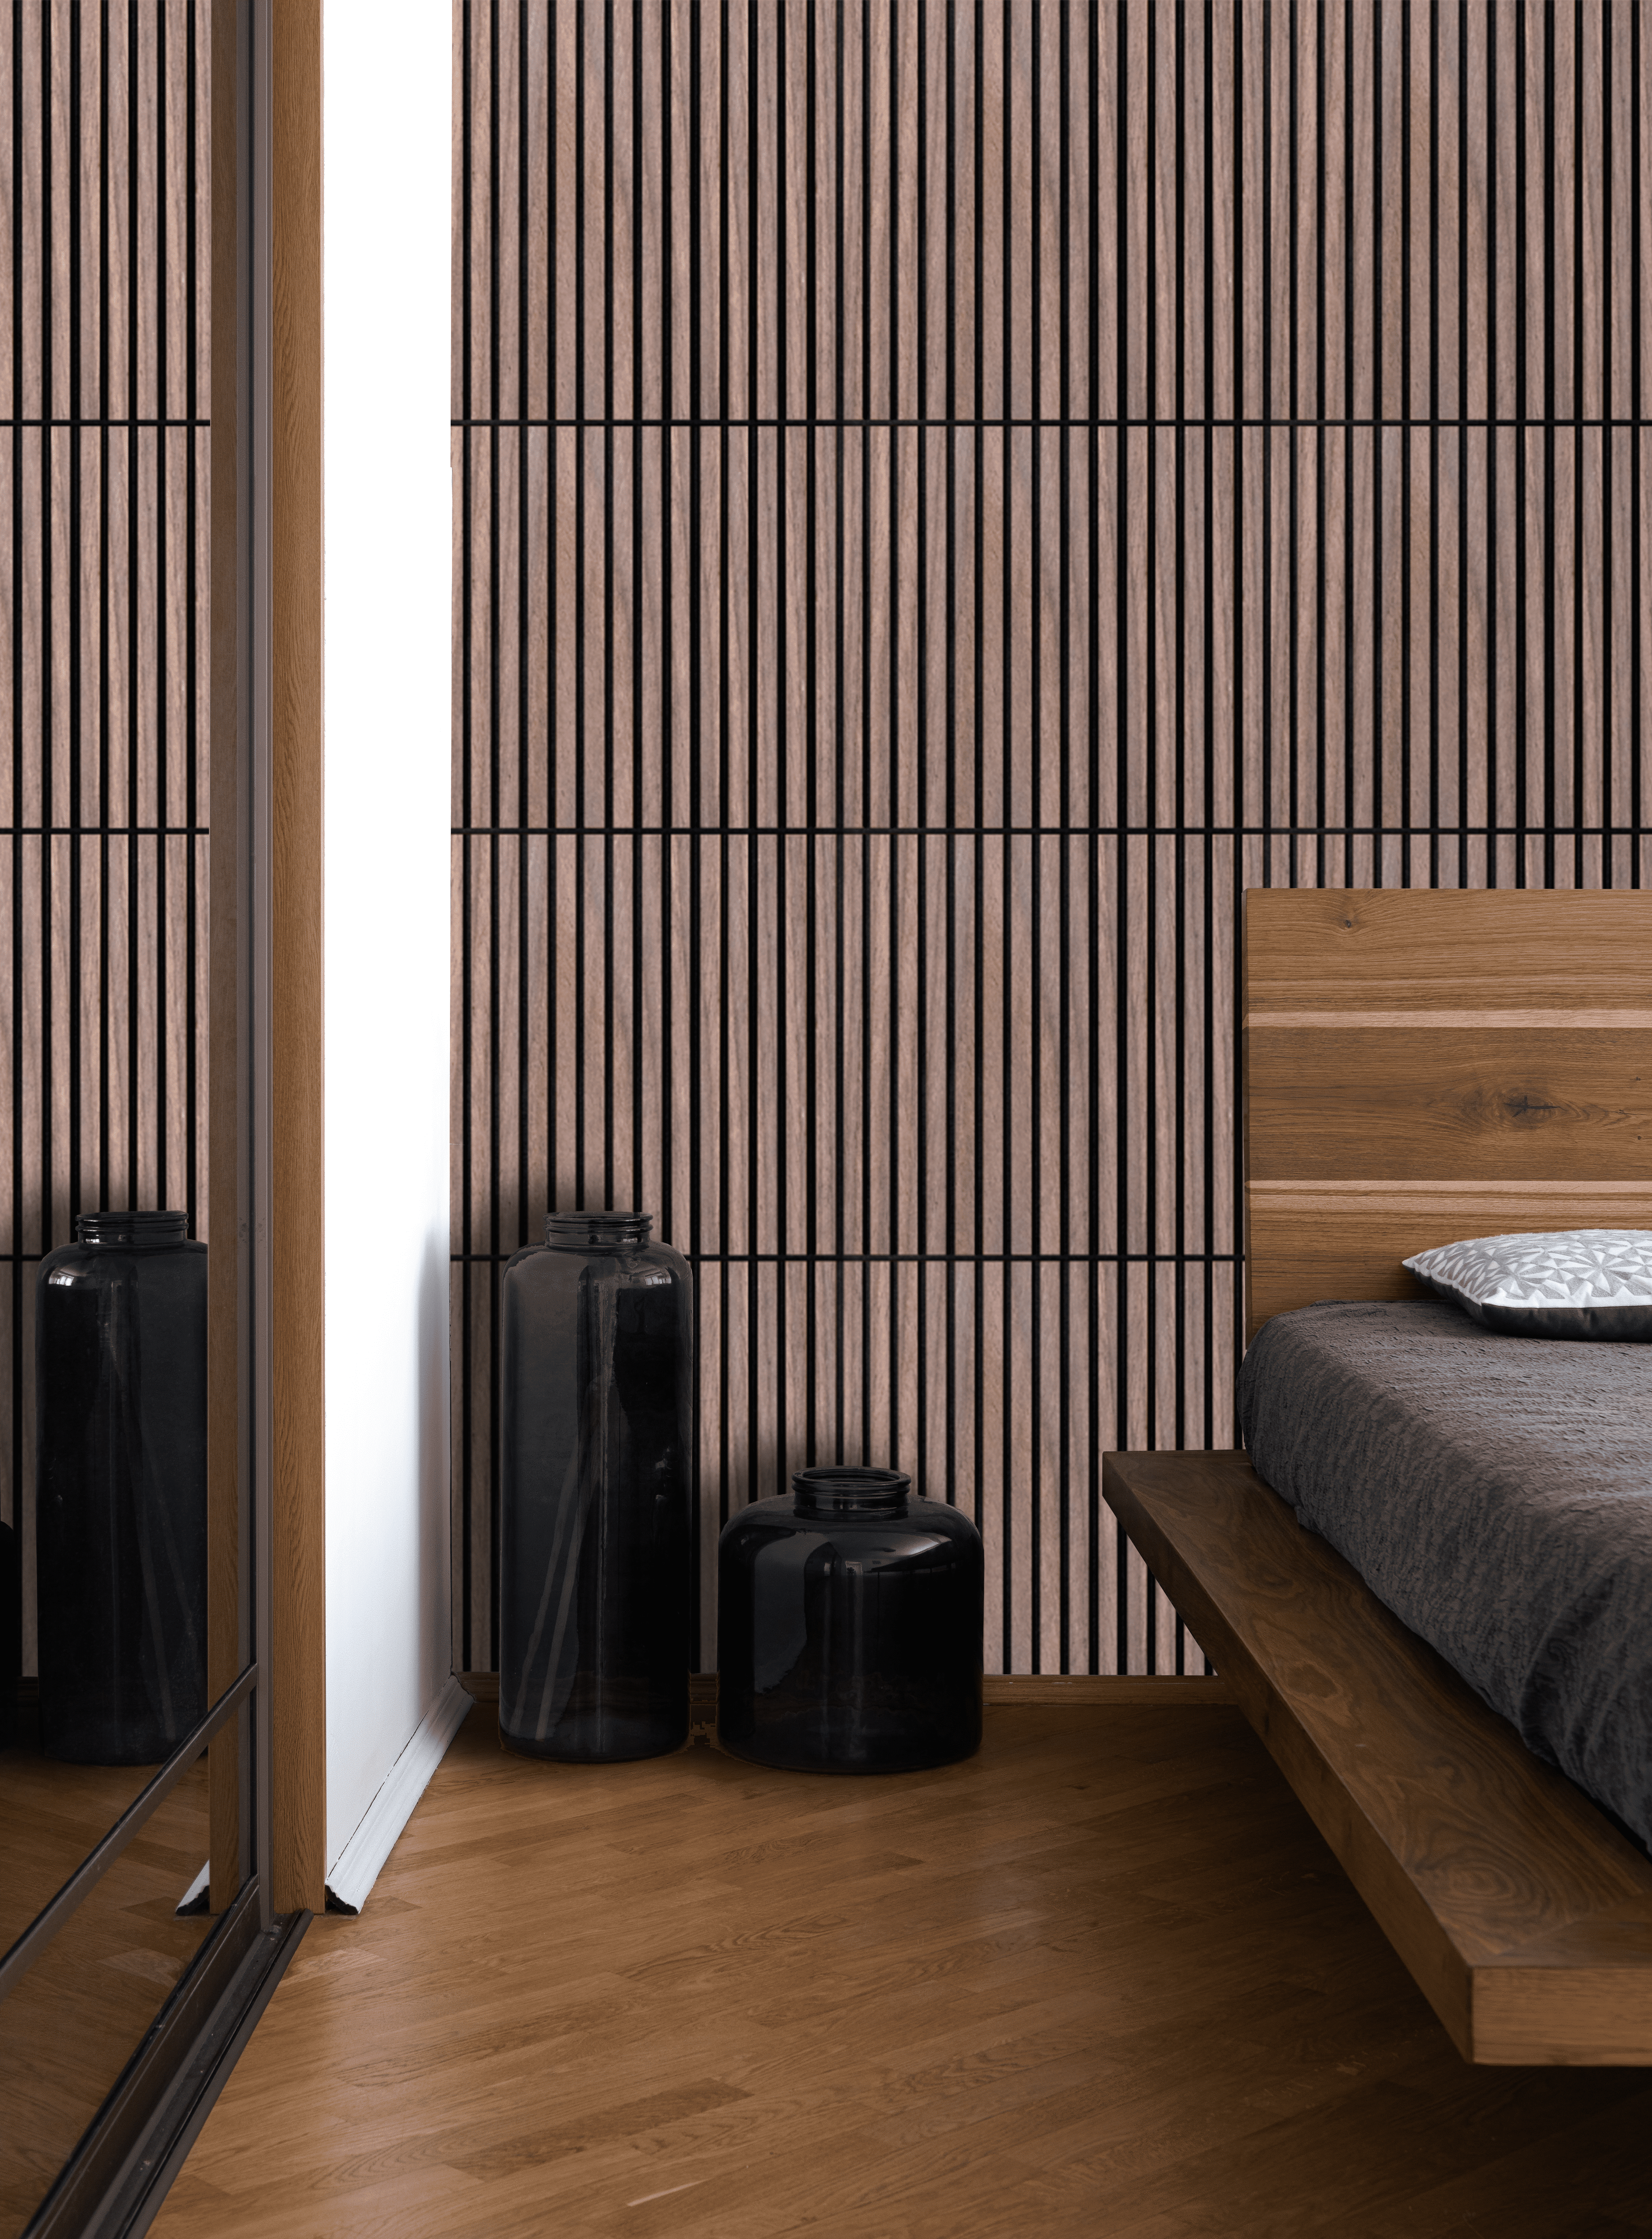 Revestimiento de pared Palillería acústico color teja/negro de 265x25 cm